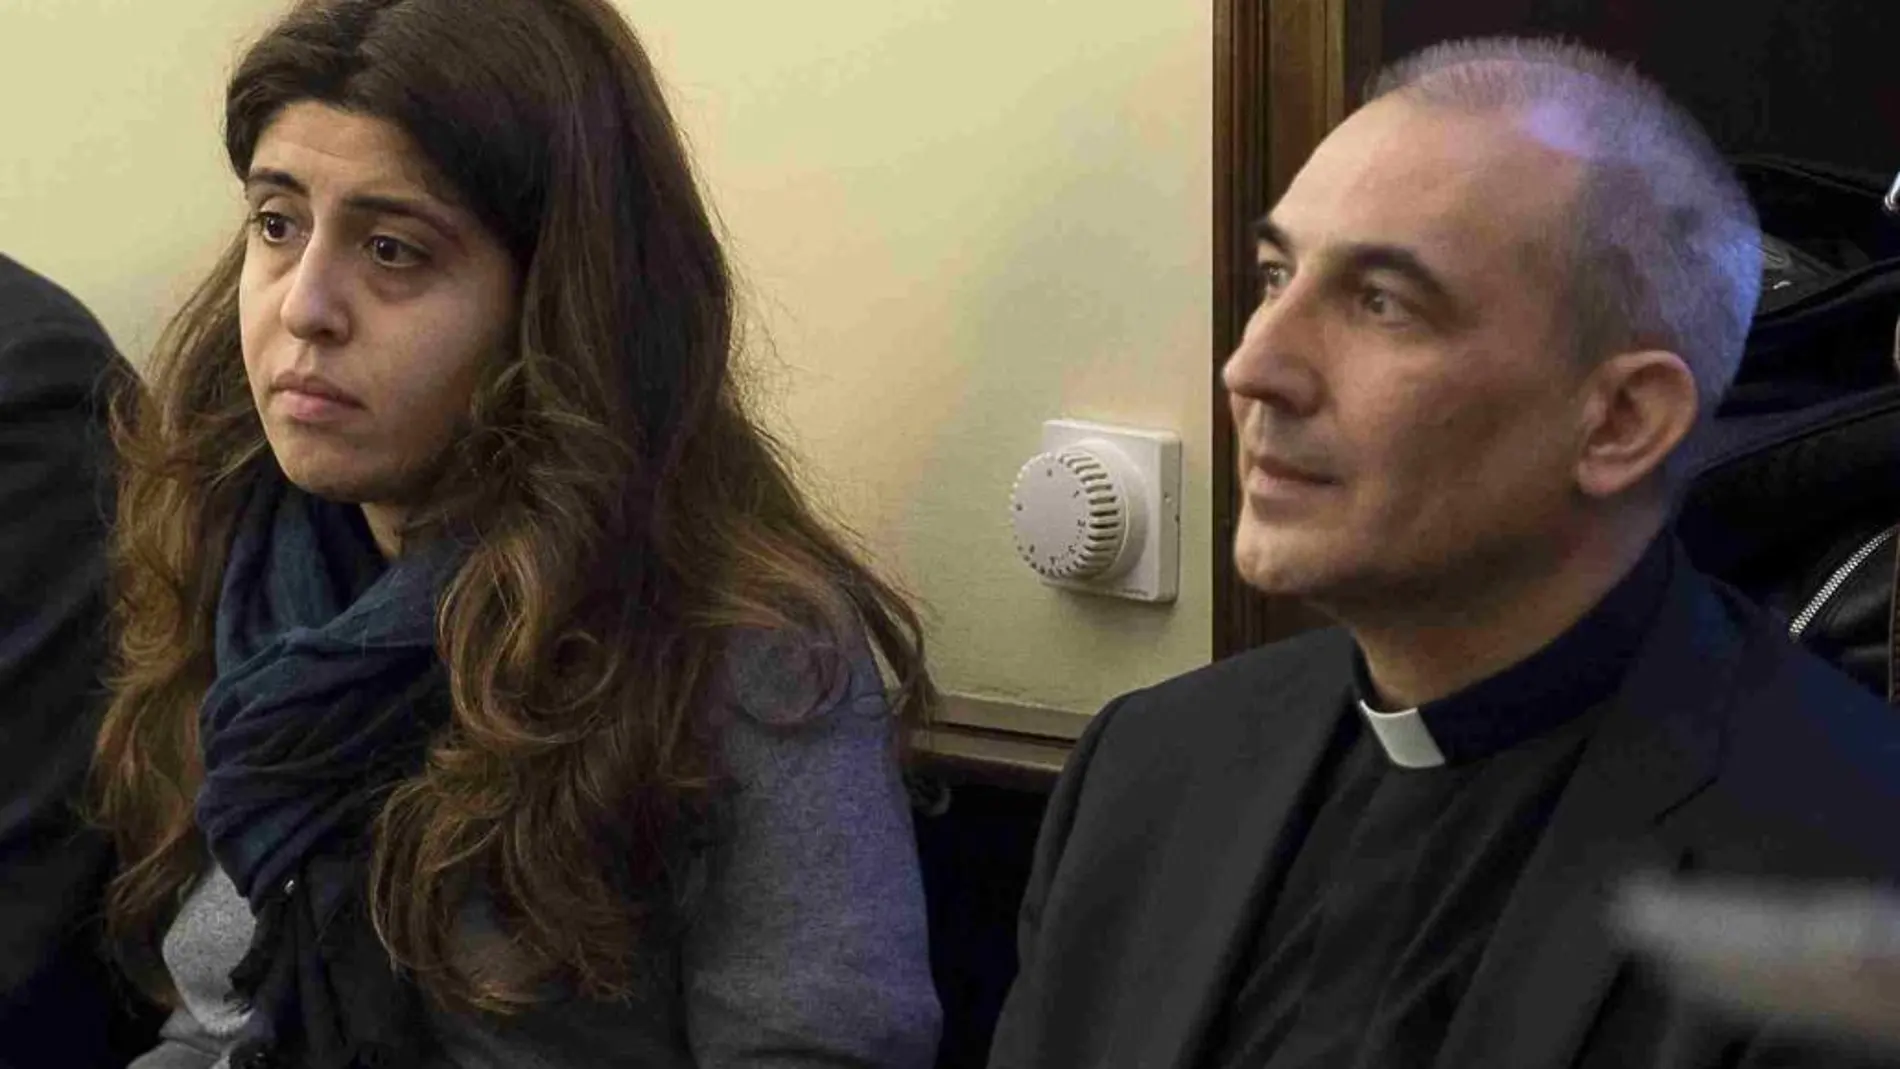 Francesca Chaouqui y Ángel Vallejo, druante el juicio que se ha seguido contra ellso en el Vaticano.